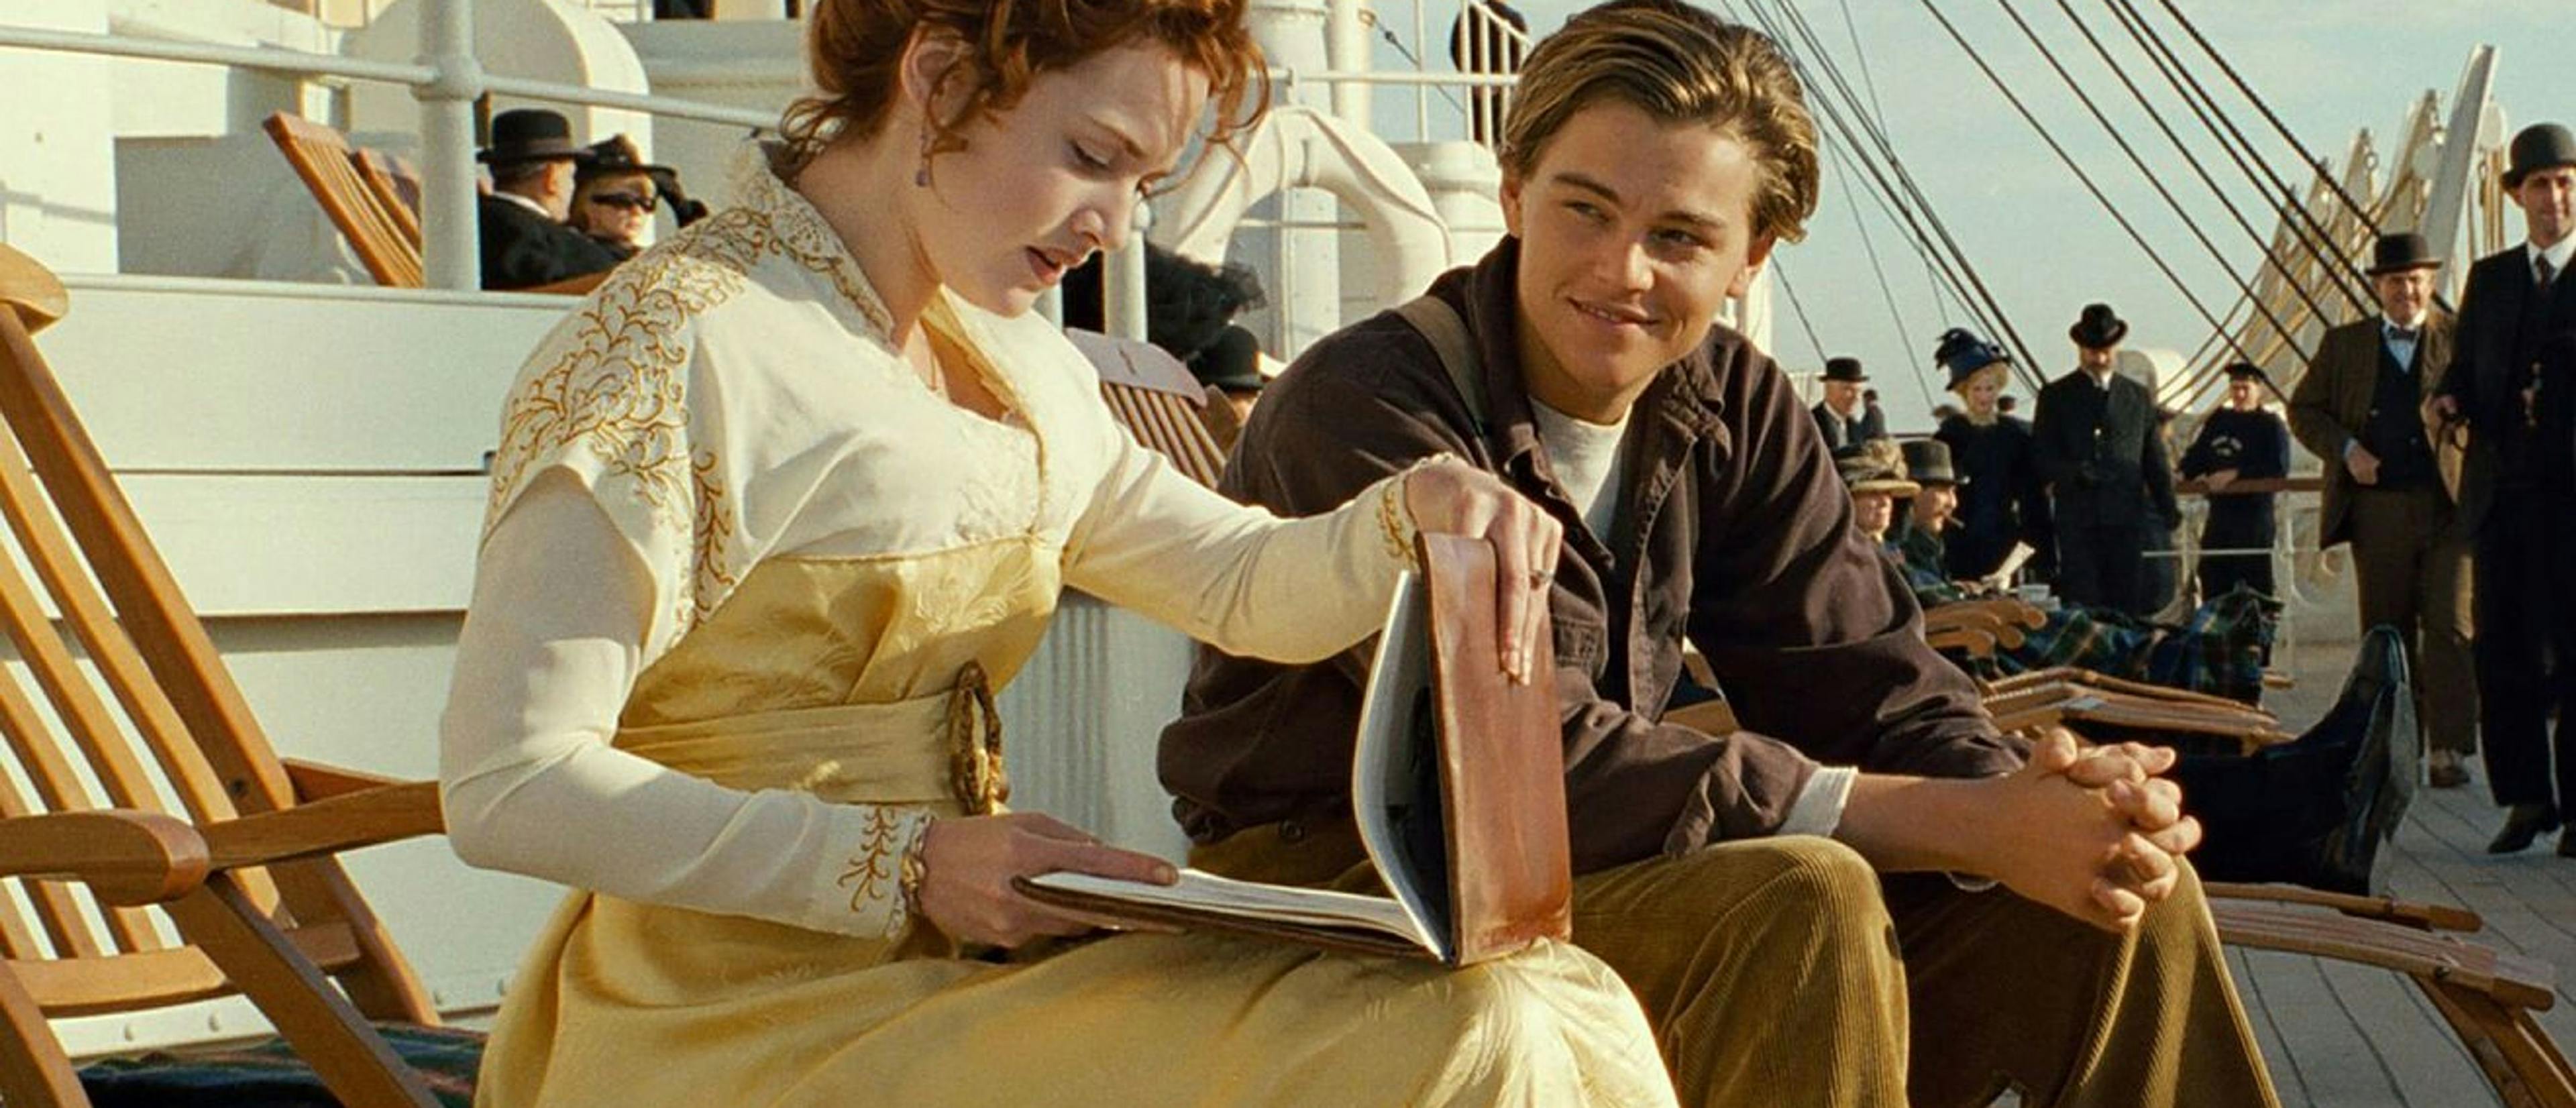 Fotograma promocional de la película 'Titanic', con Kate Winslet y Leonardo DiCaprio en primer plano